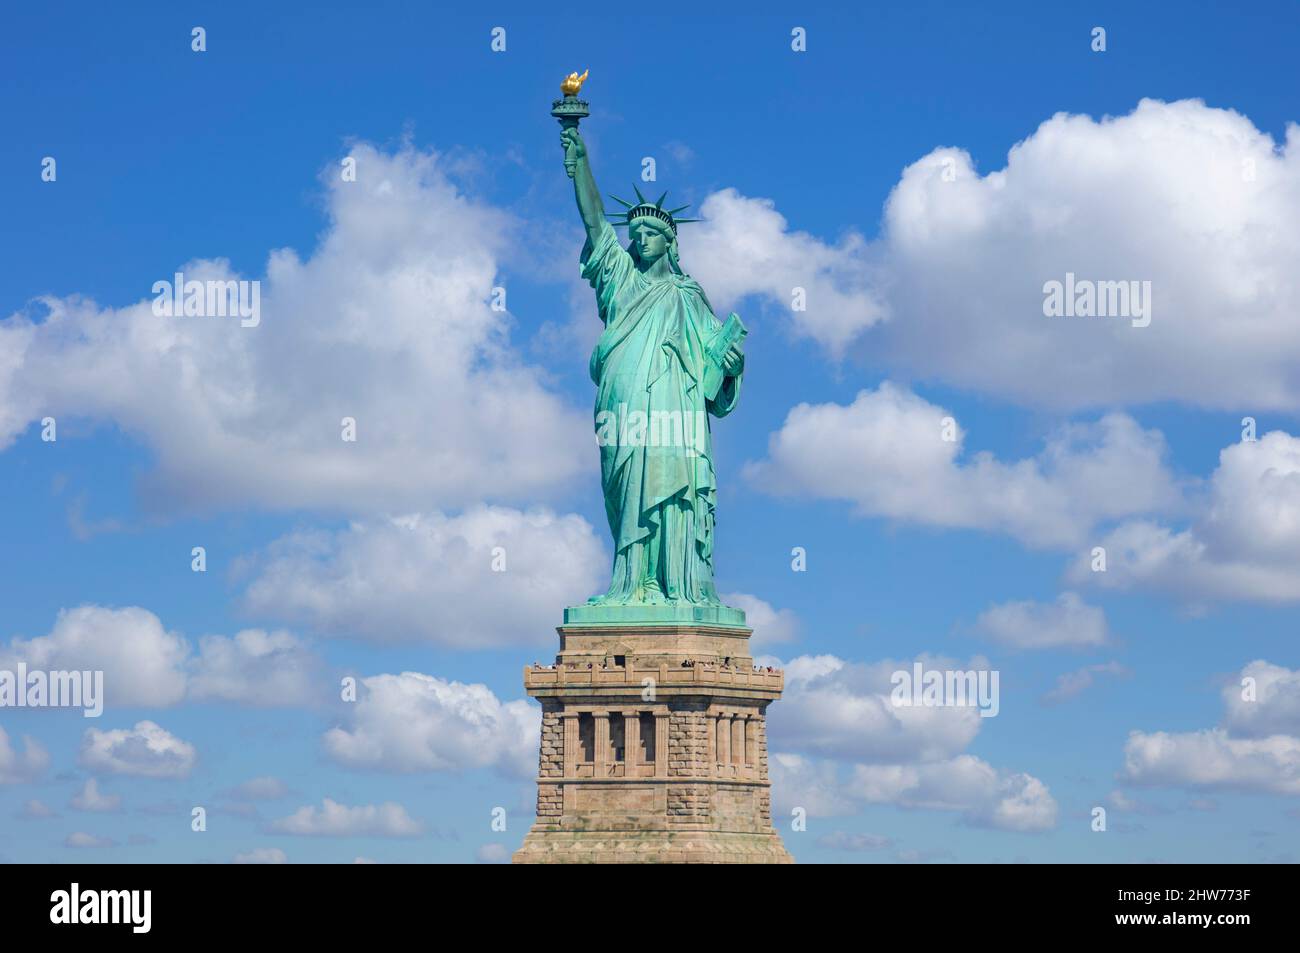 Freiheitsstatue New York Freiheitsstatue New York City Freiheitsstatue Island New york State usa vereinigte Staaten von amerika blauer Himmel weiße Wolken Stockfoto